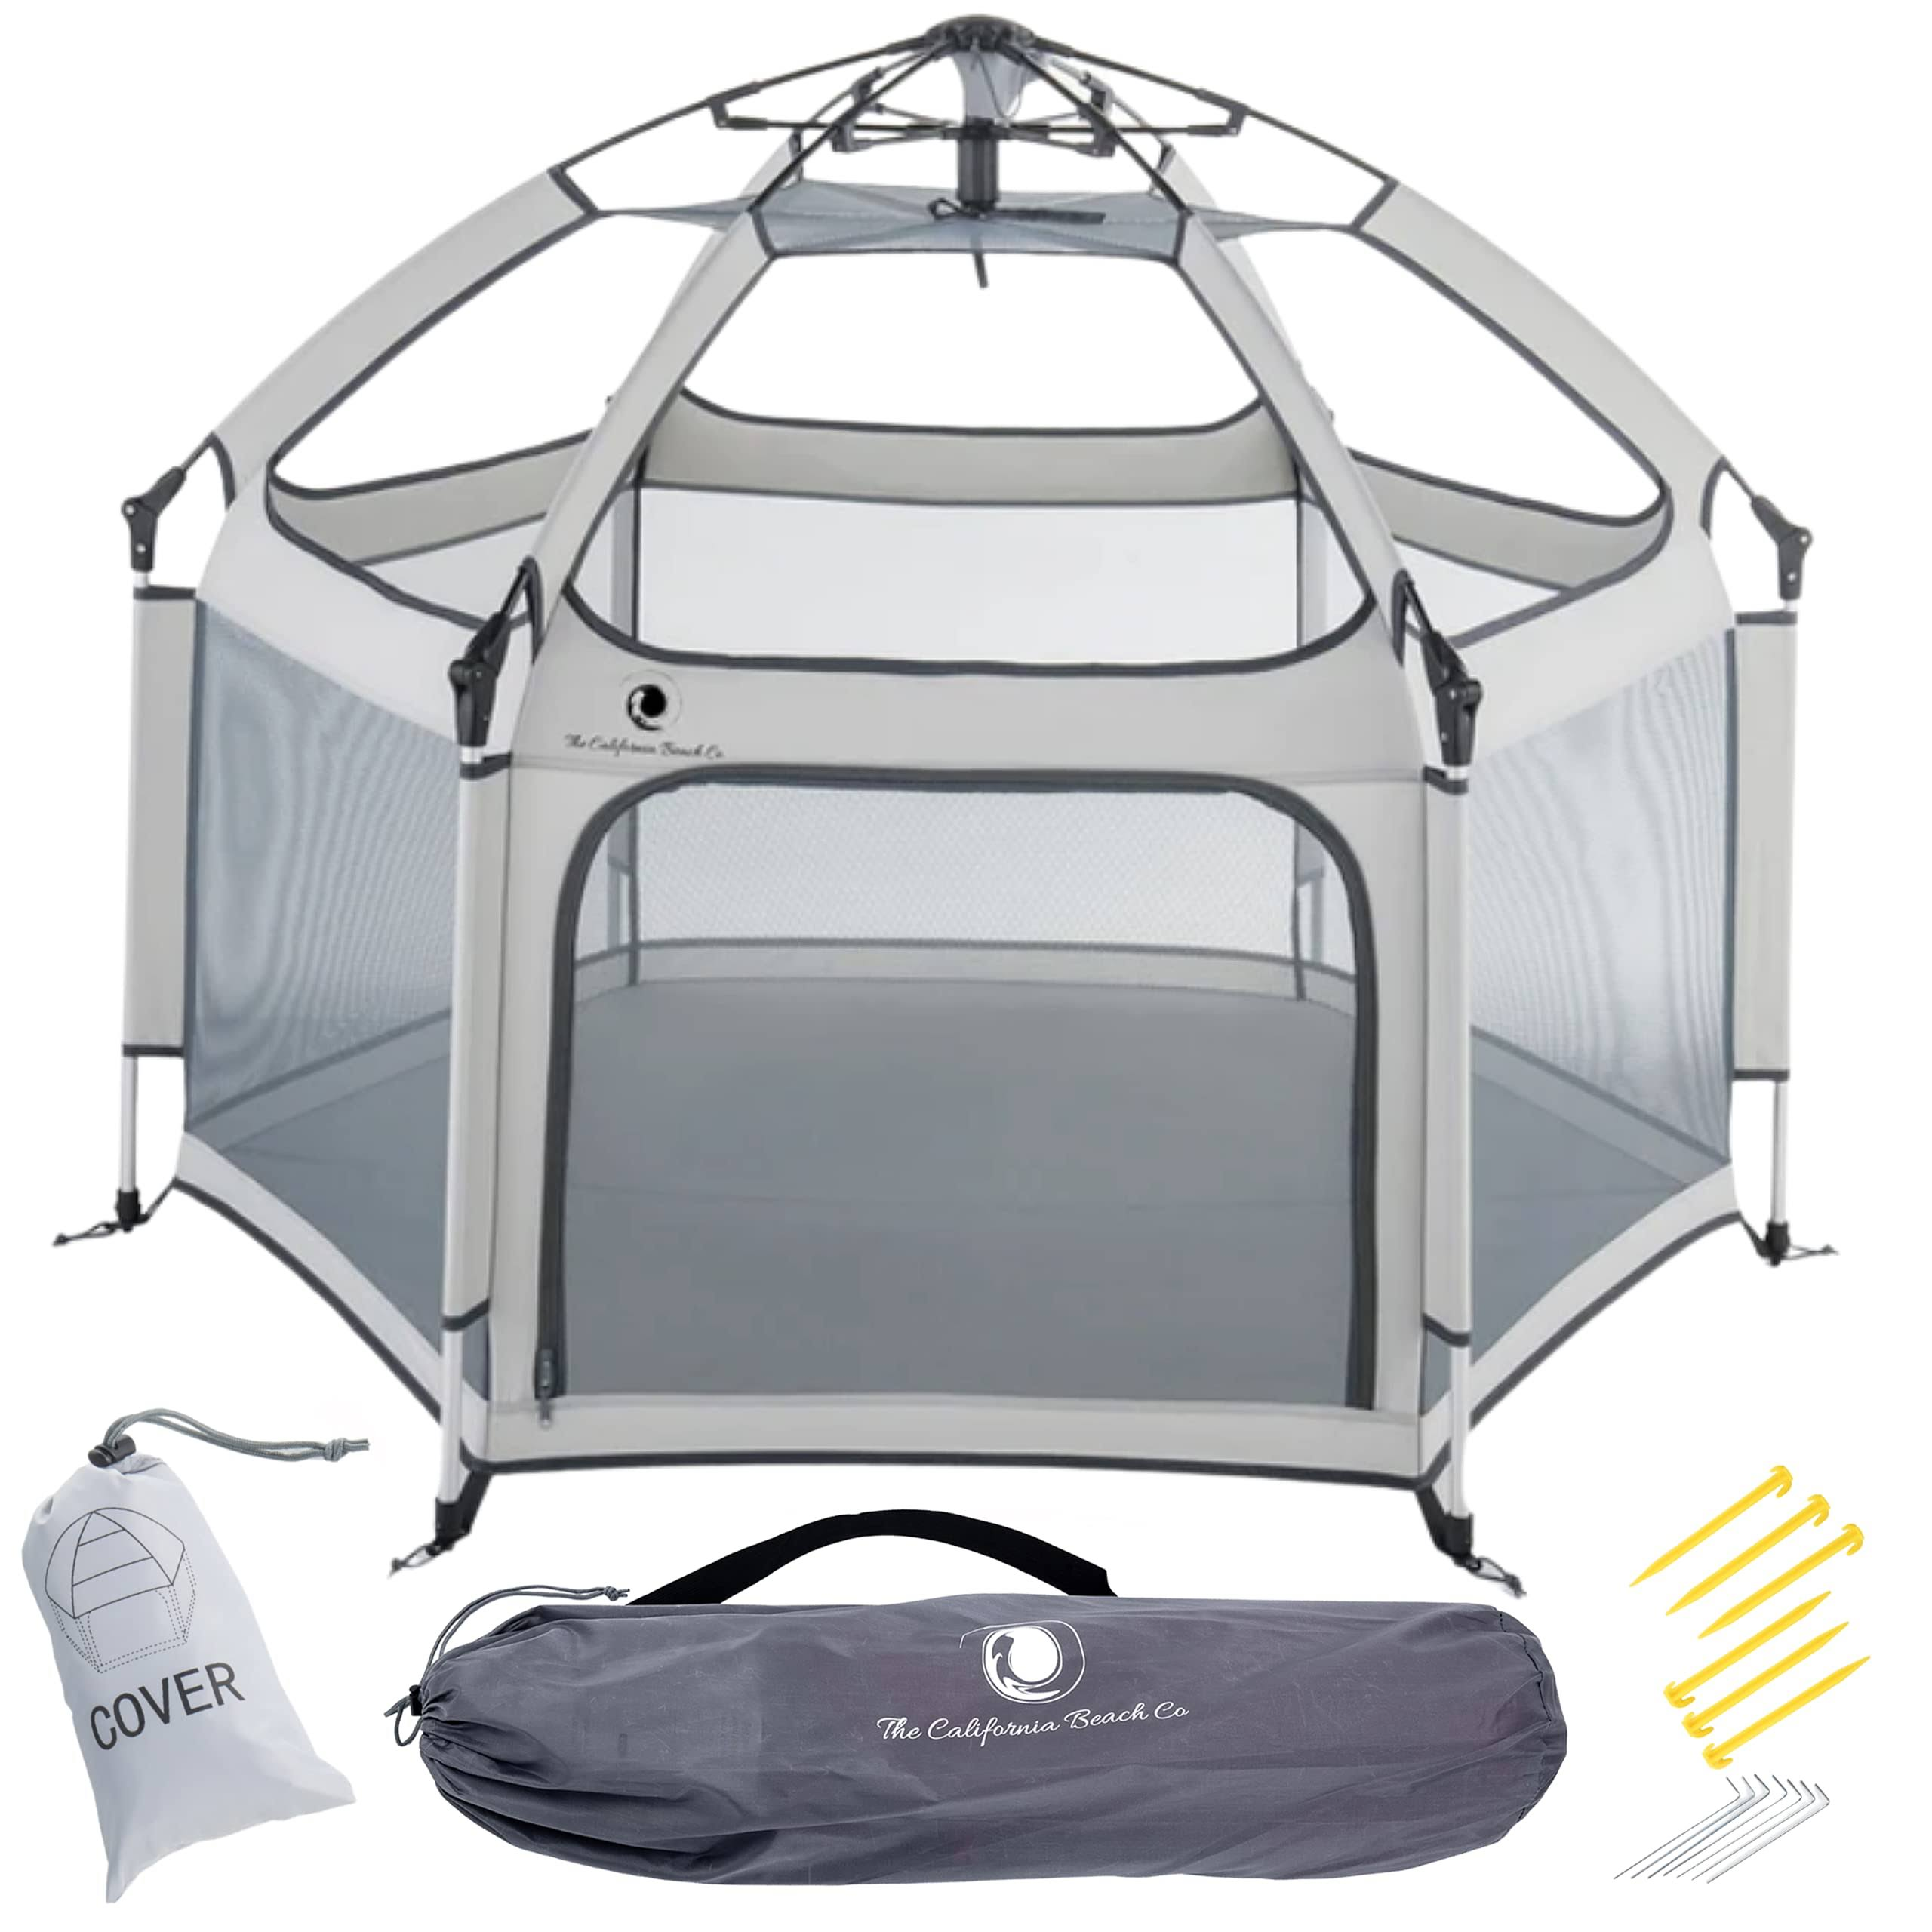 Cosmic Grey Portable Pop-Up Tent | Pop N& Go Kids